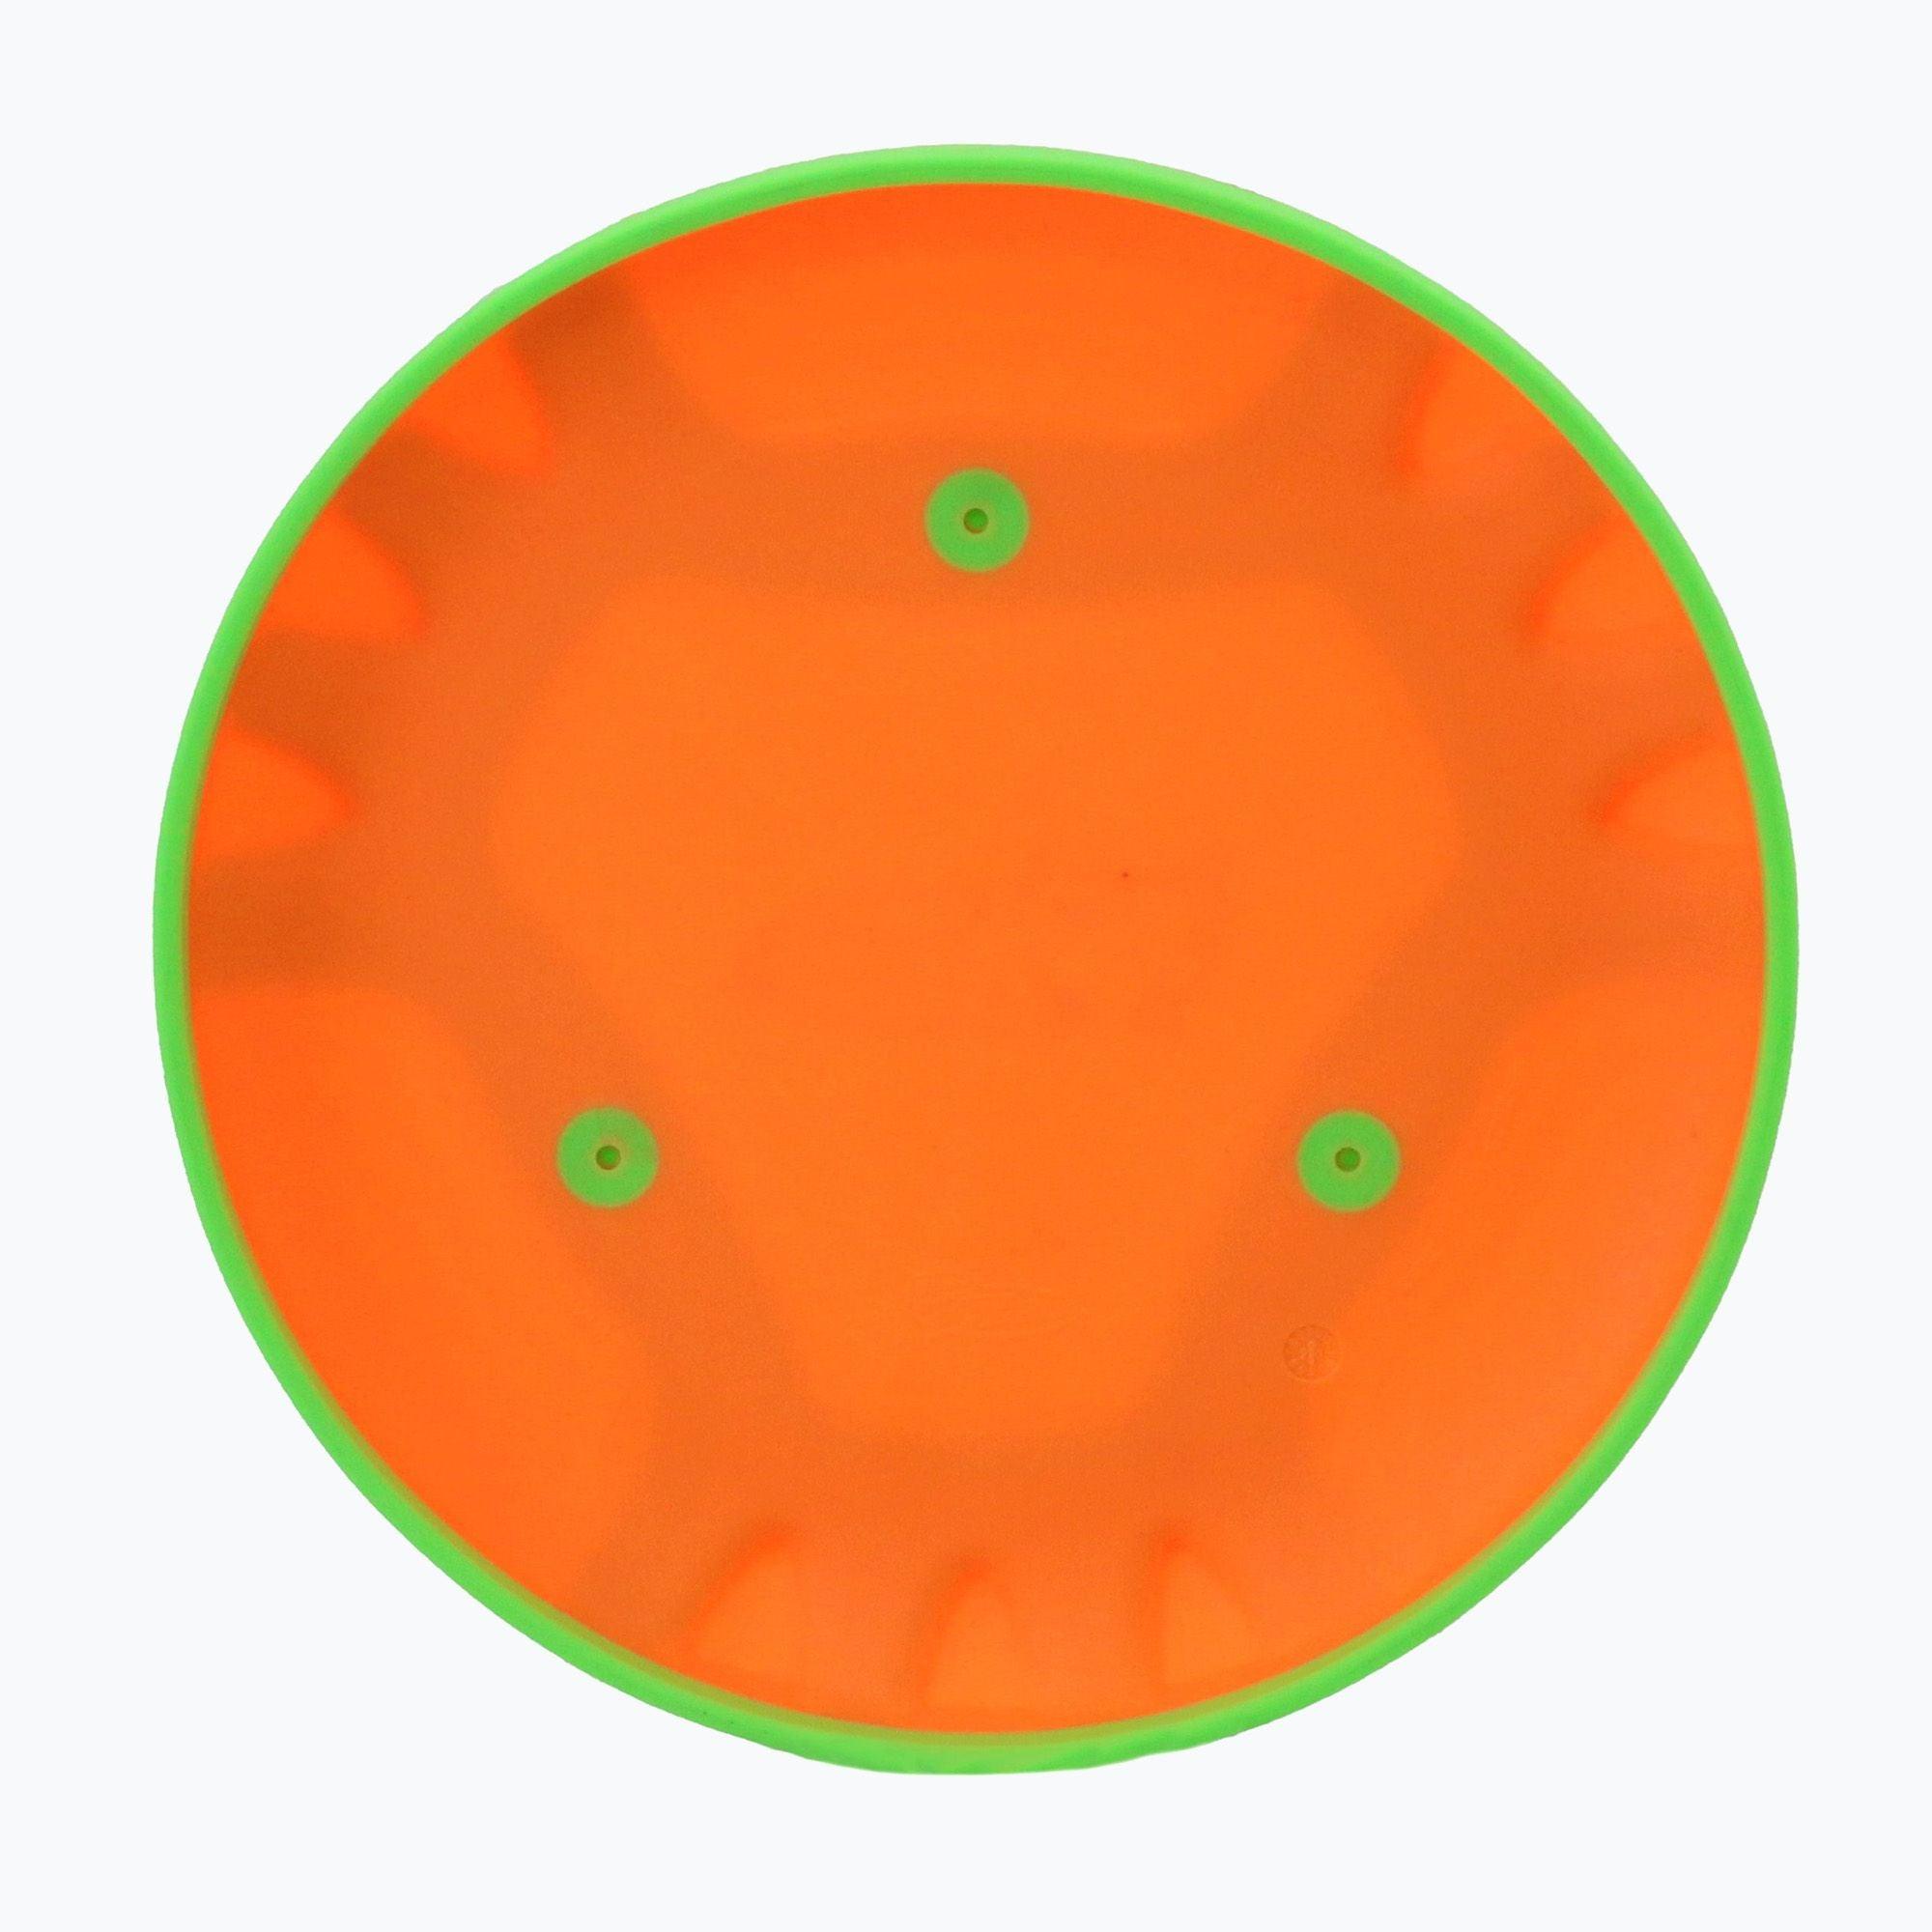 Sunflex: latający dysk frisbee Mutant - Noski Noski